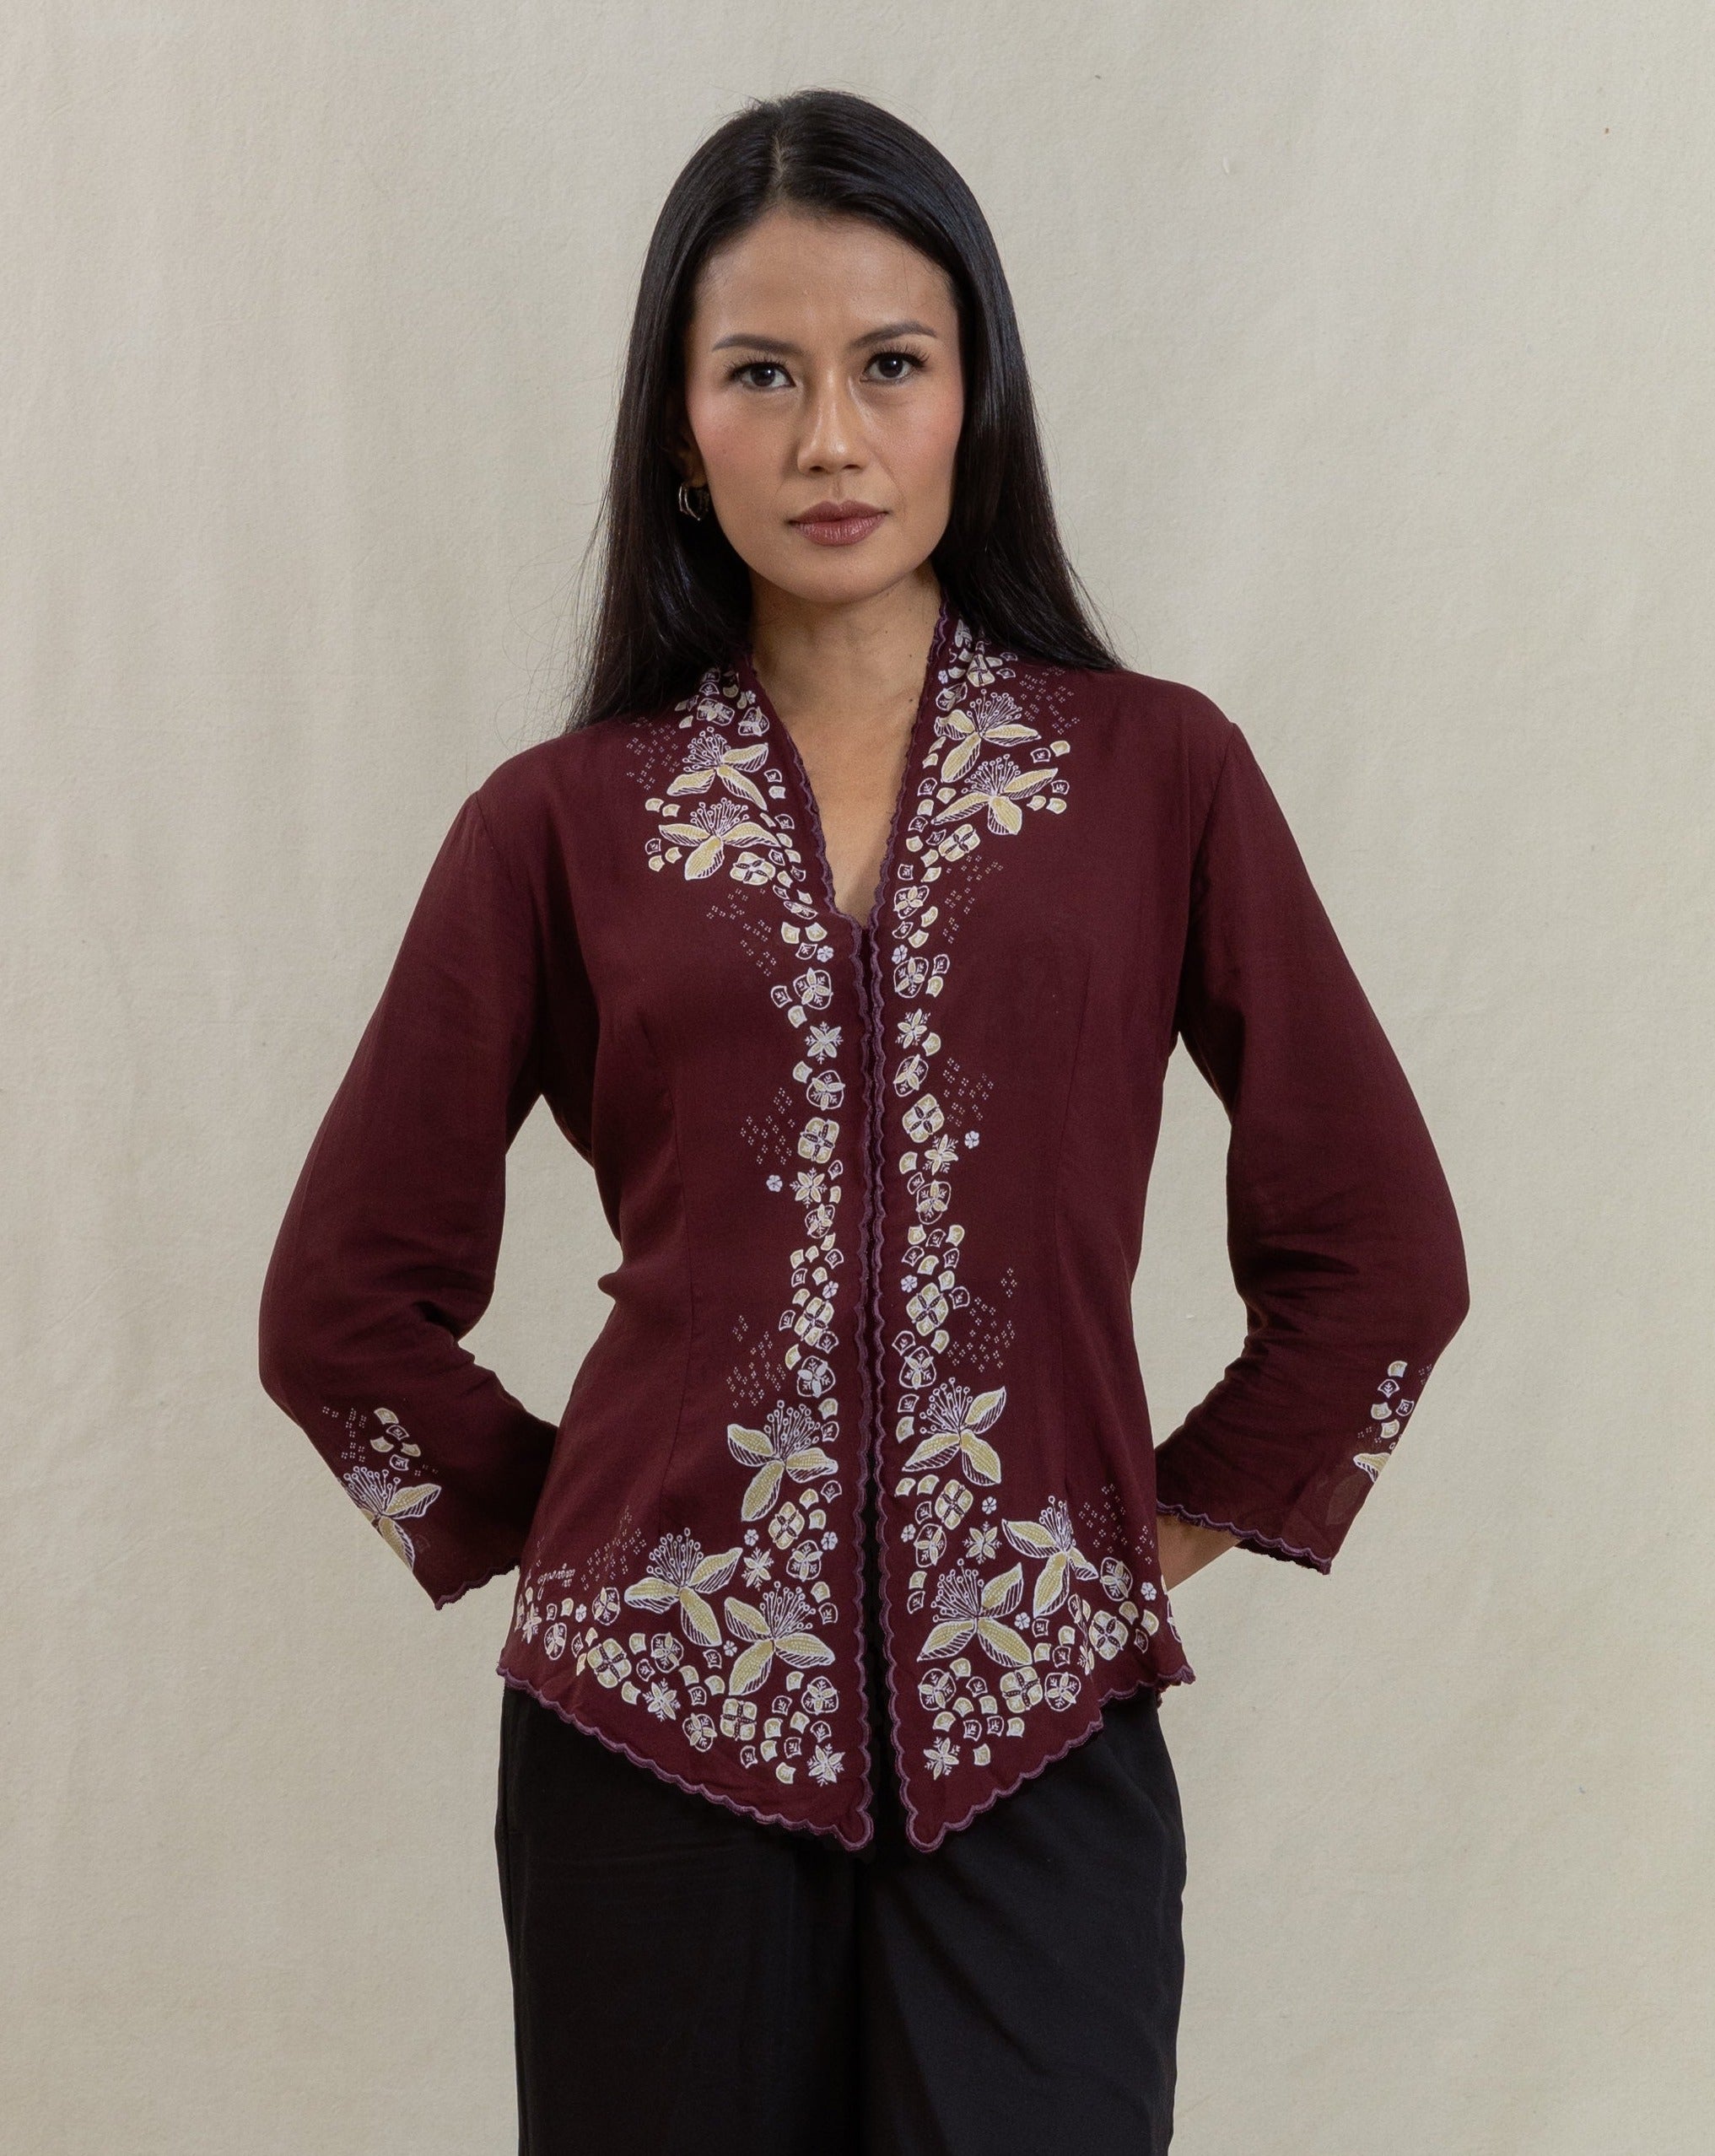 kebaya, kebaya modern, batik, batik indonesia, batik tulis, natural dye, plant based, womenswear, women's fashion, traditional clothing